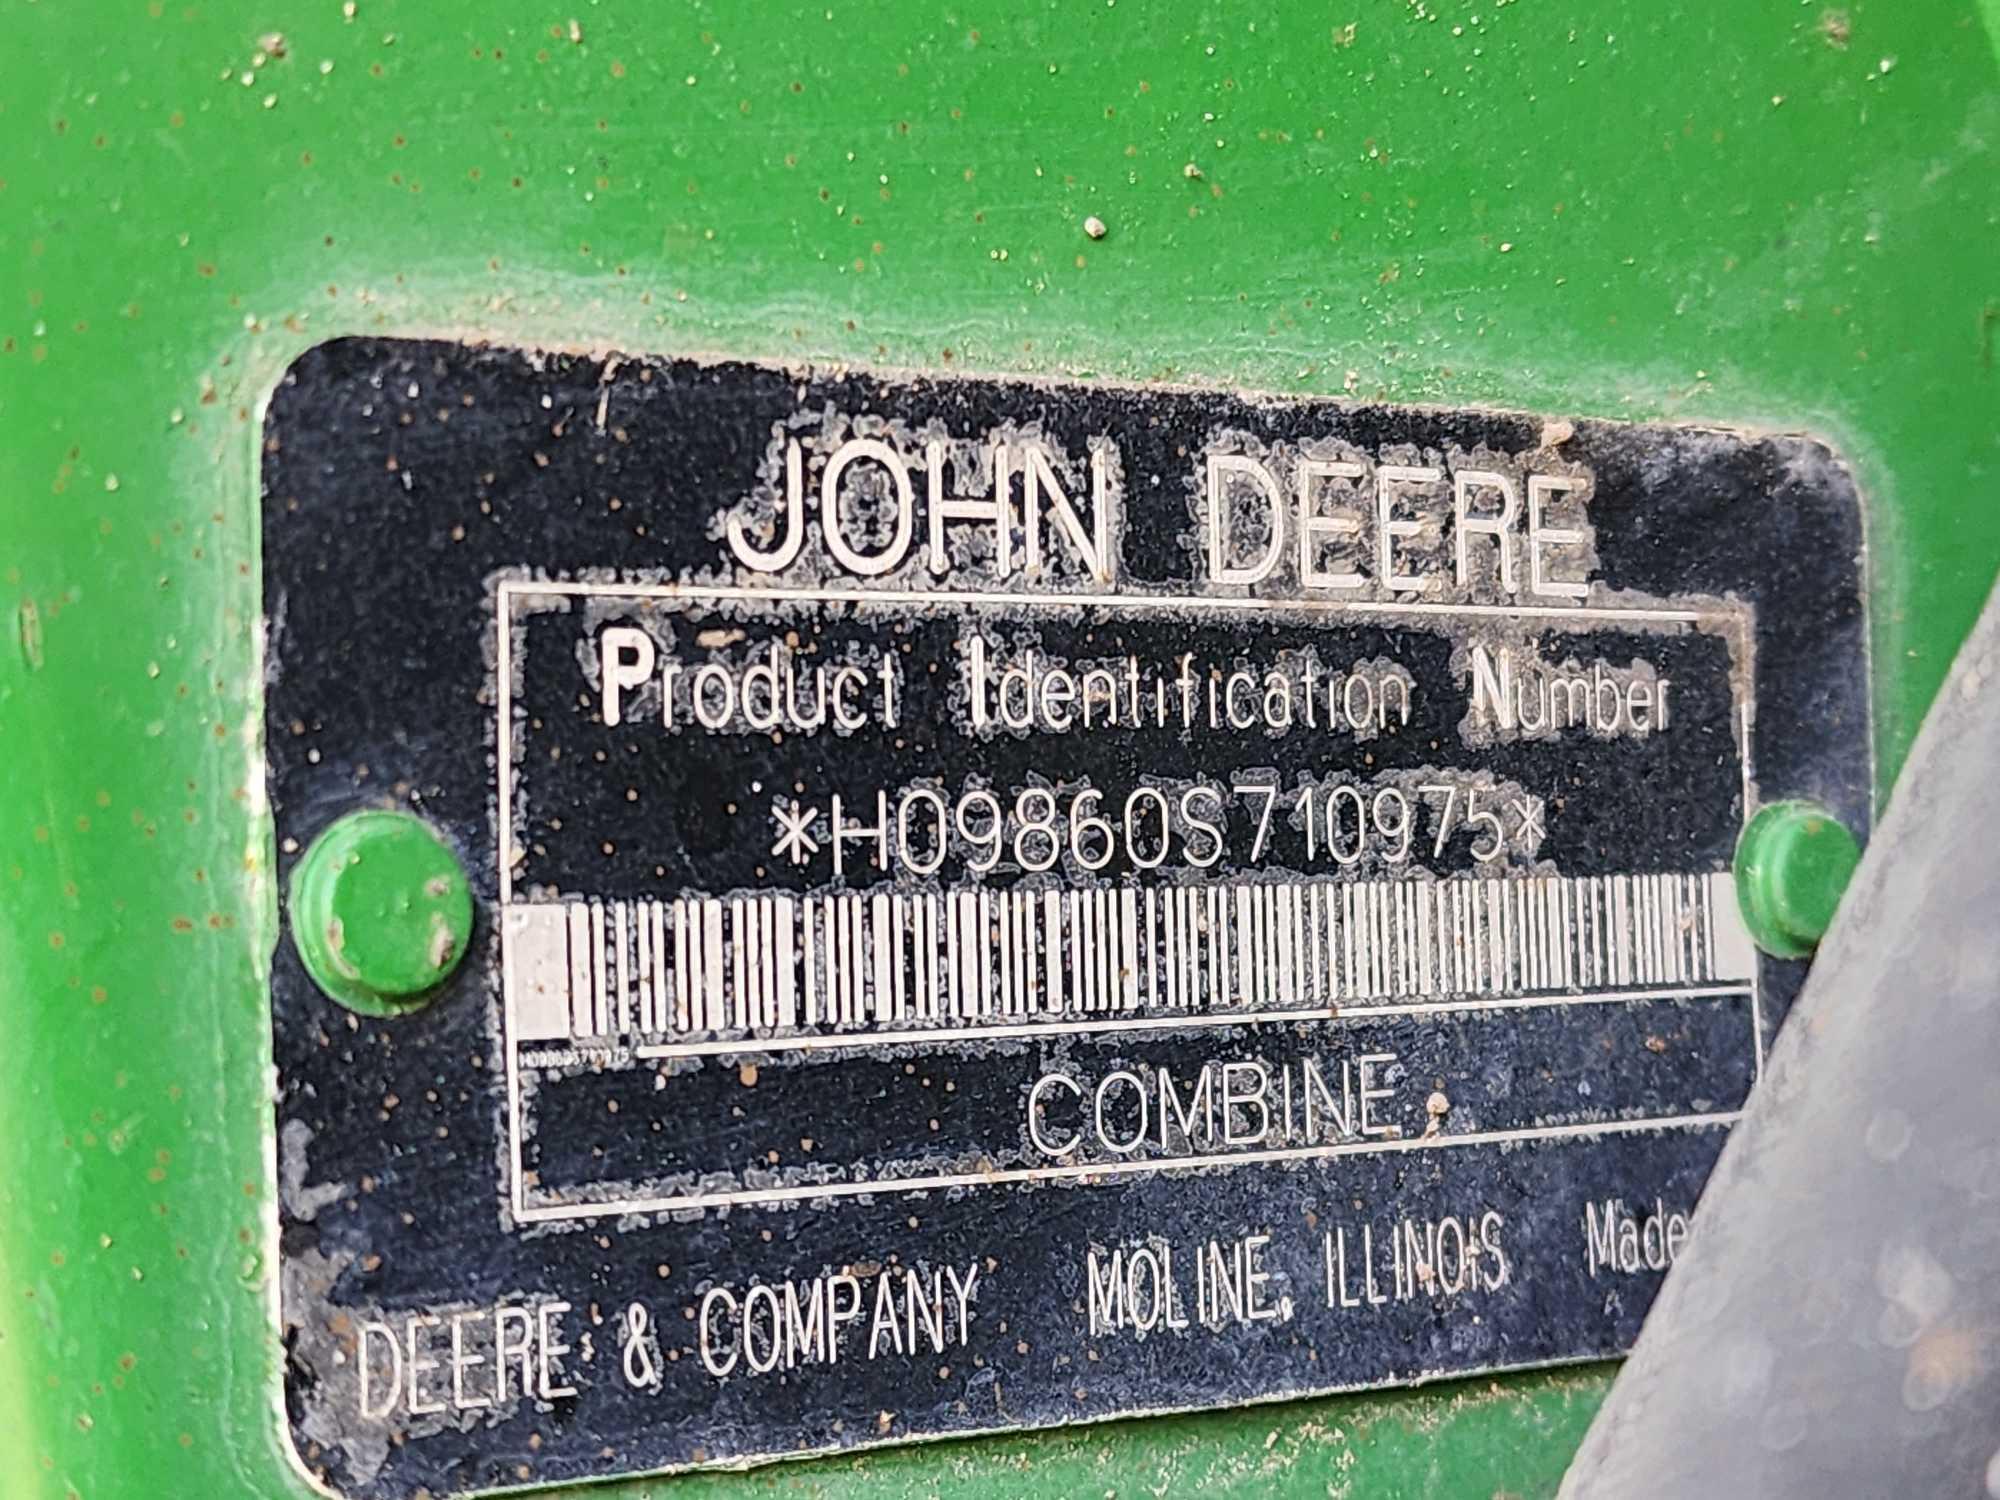 John Deere 9860 STS Combine